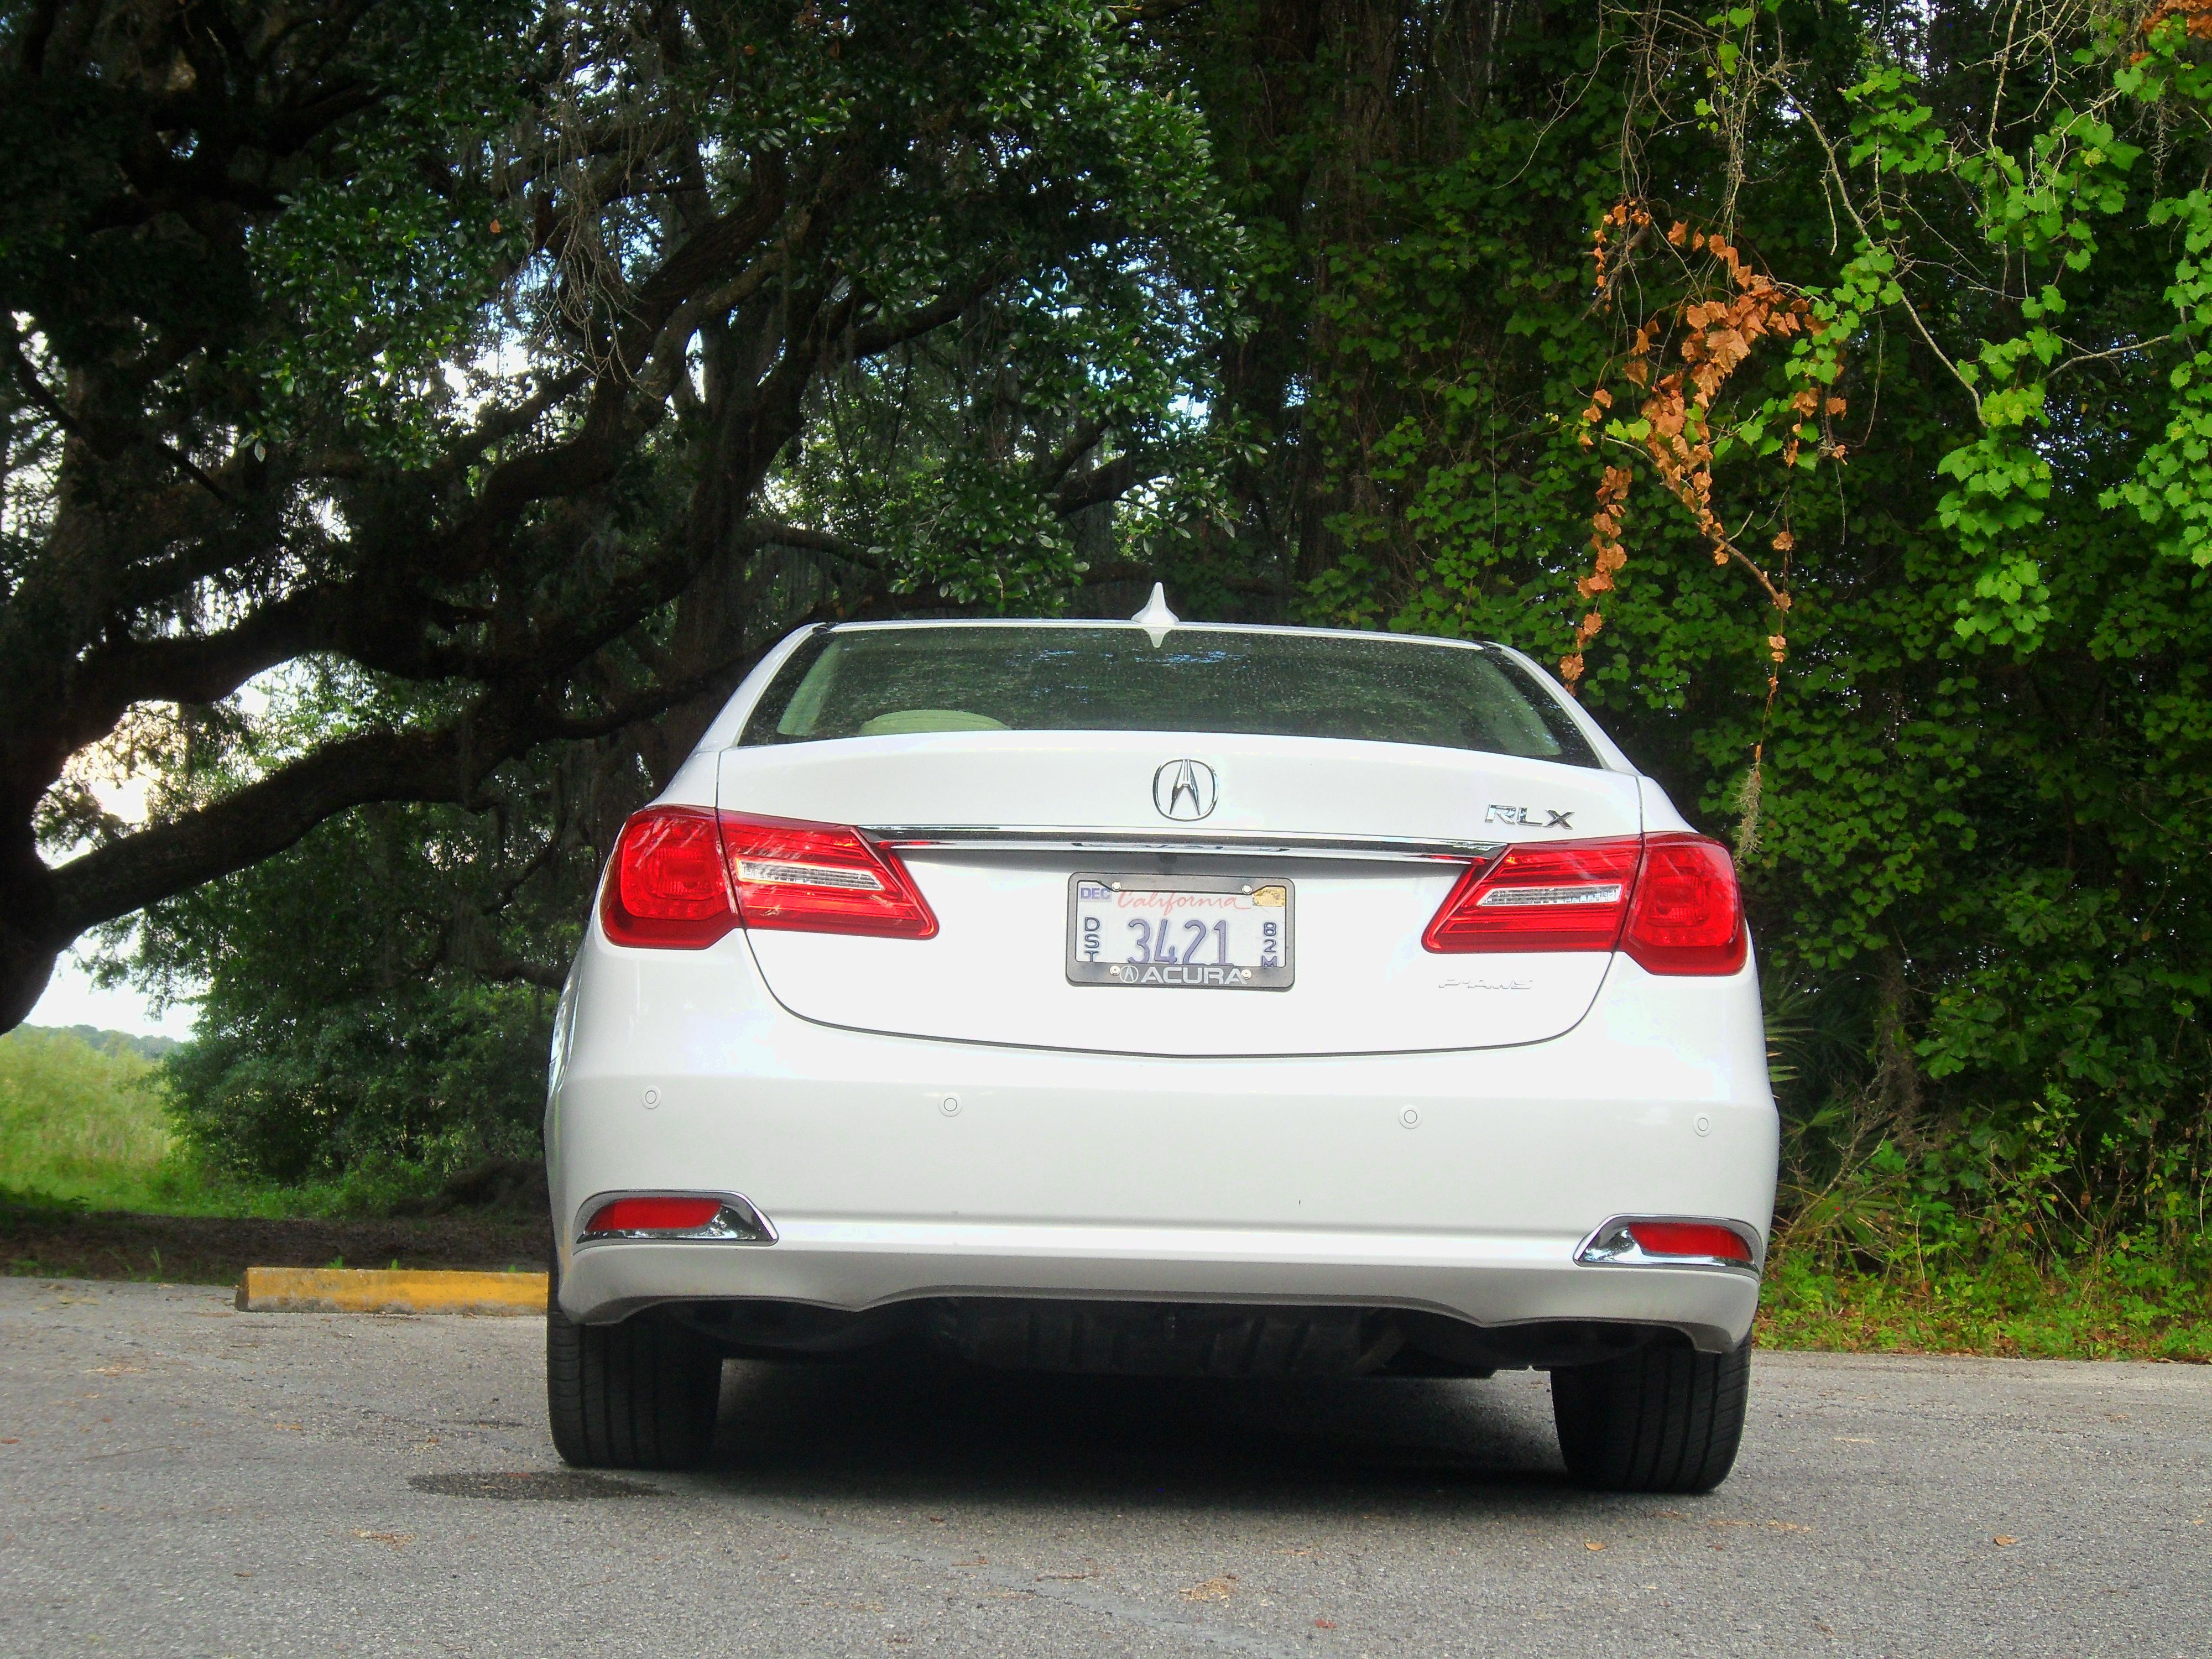 2014 Acura RLX Advance - Driven